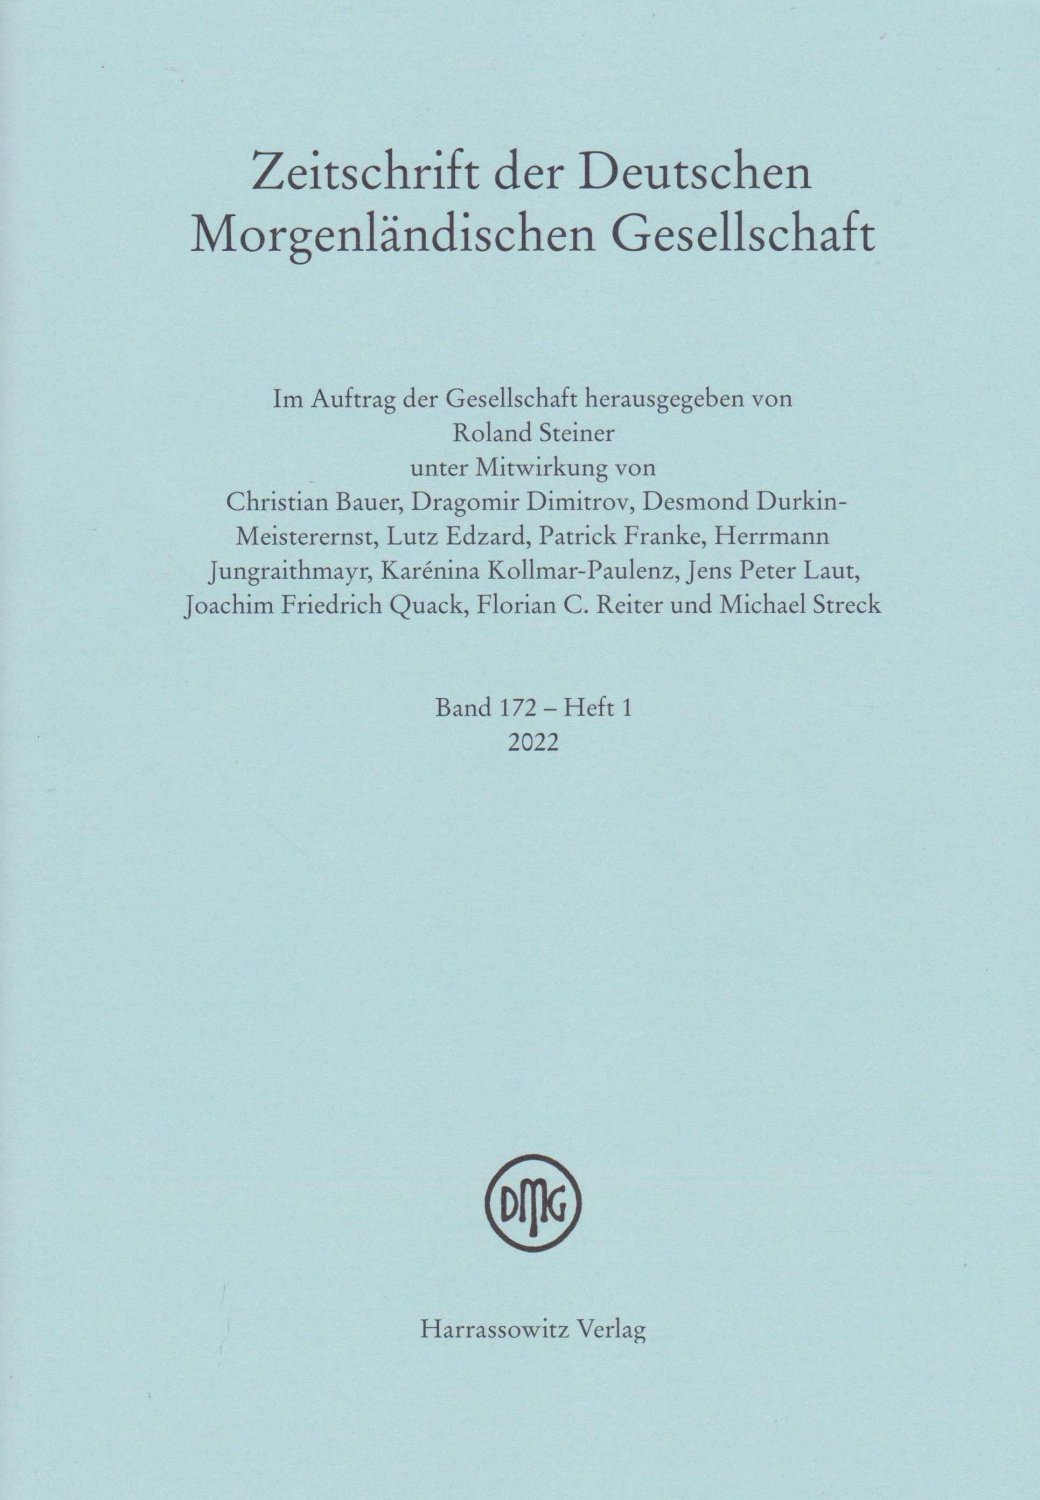 STEINER, Roland (Herausgeber):  Zeitschrift der Deutschen Morgenländischen Gesellschaft. Band 172 - Heft 1, 2022. 